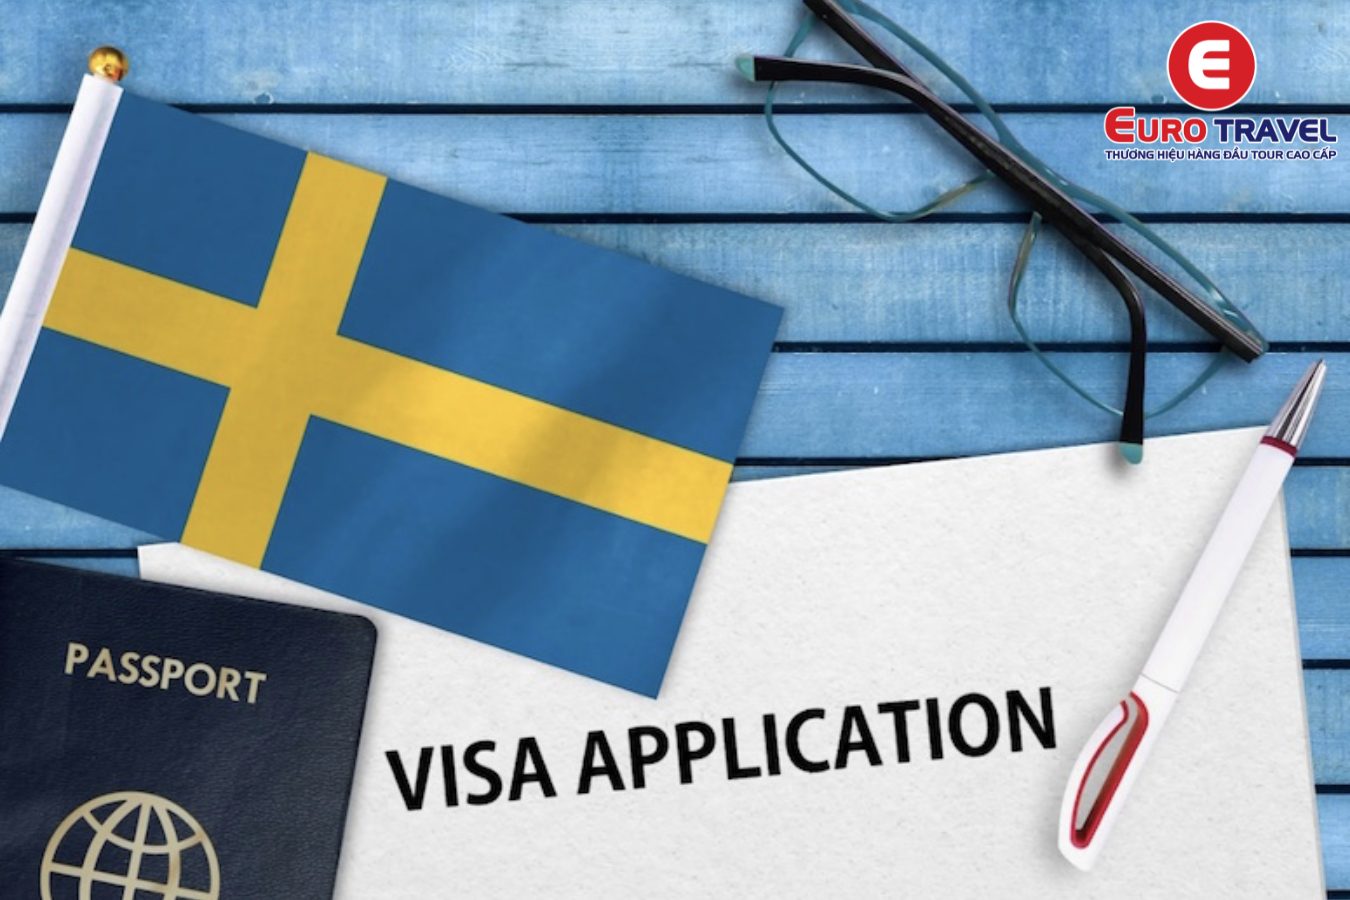 Một số câu hỏi thường gặp trong quá trình xin visa du lịch Thuỵ Điển